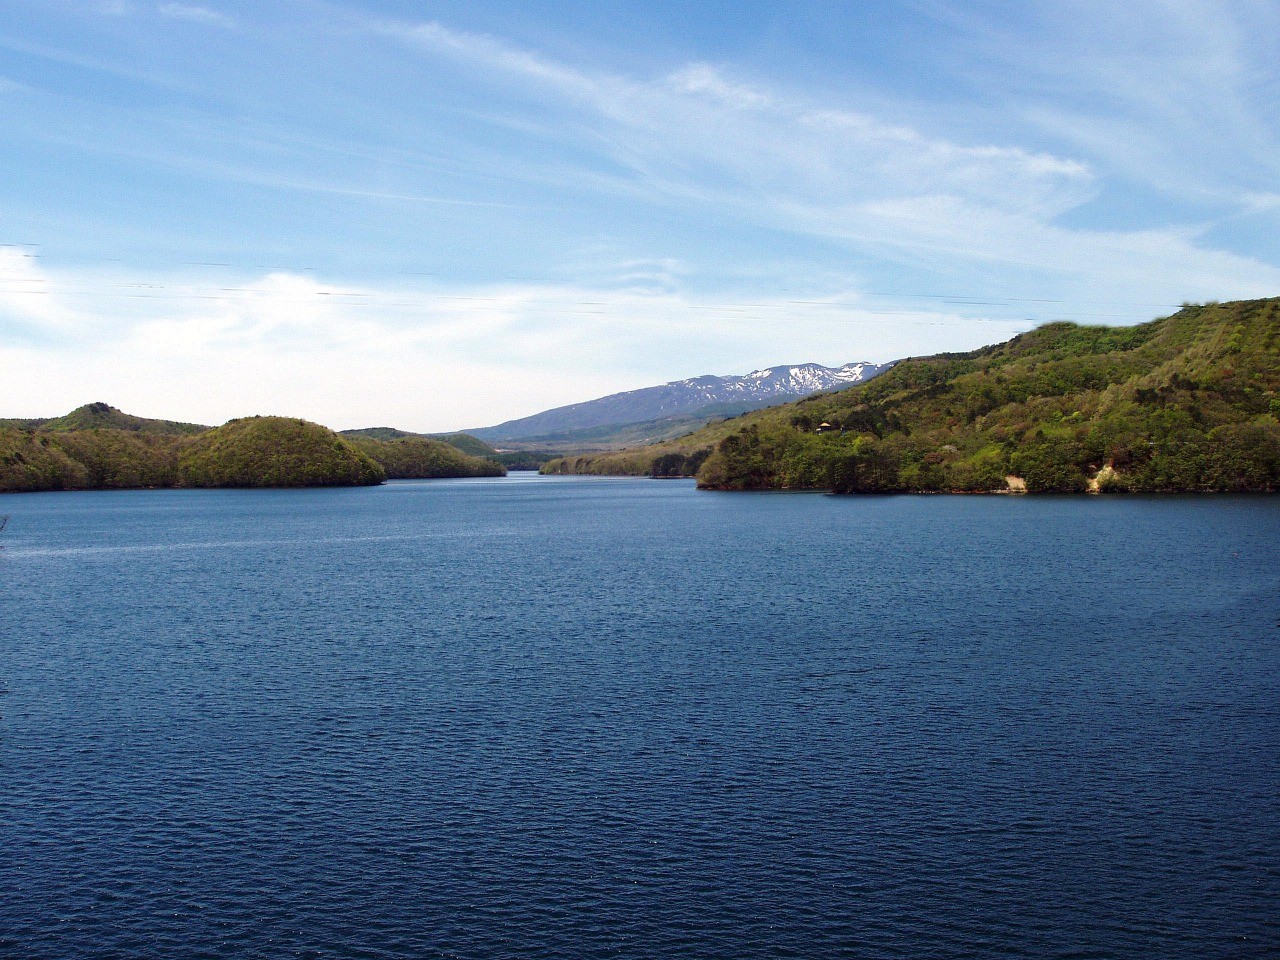 Lake Hatori